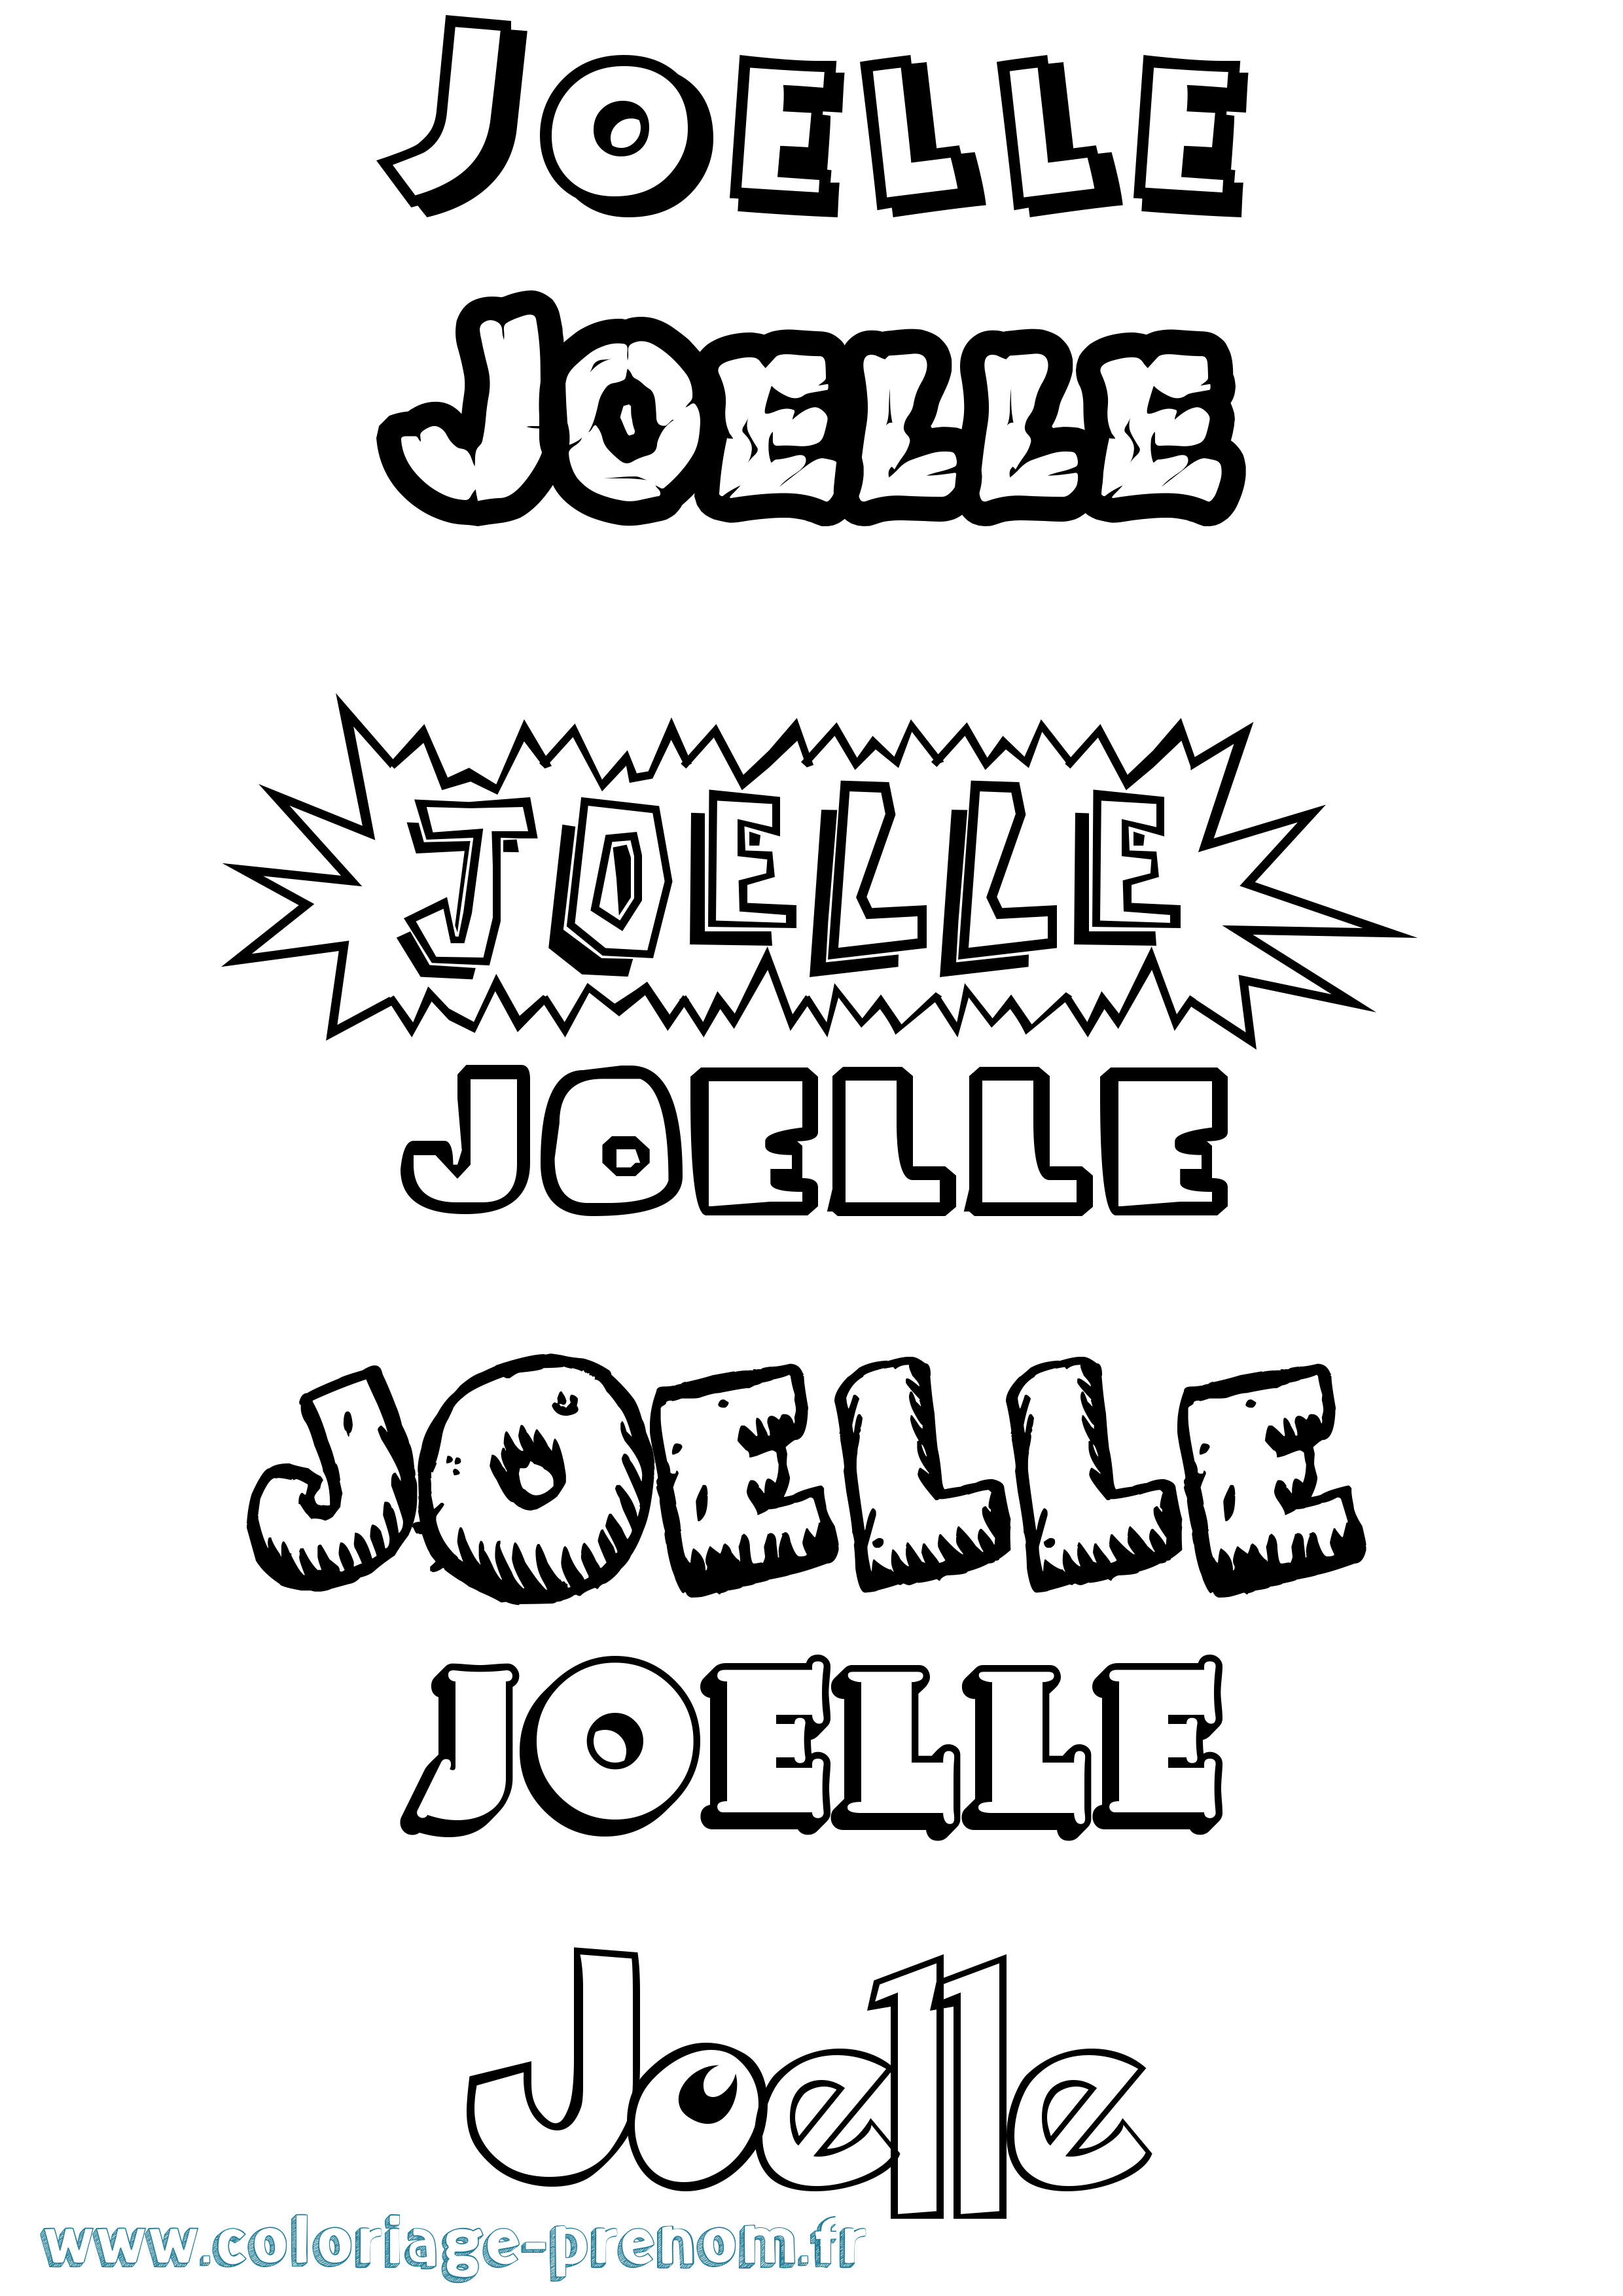 Coloriage prénom Joelle Dessin Animé